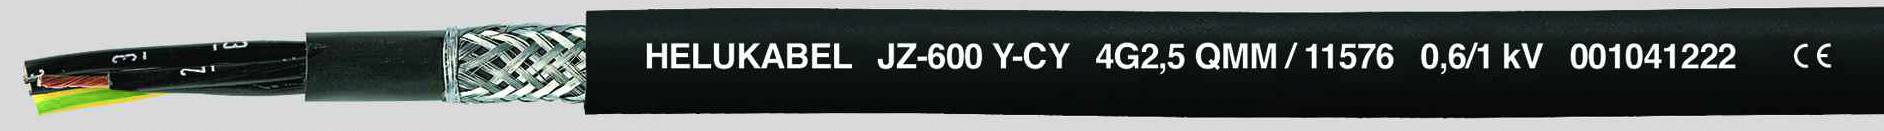 HELUKABEL JZ-600-Y-CY Steuerleitung 7 G 0.50 mm² Schwarz 11469-500 500 m